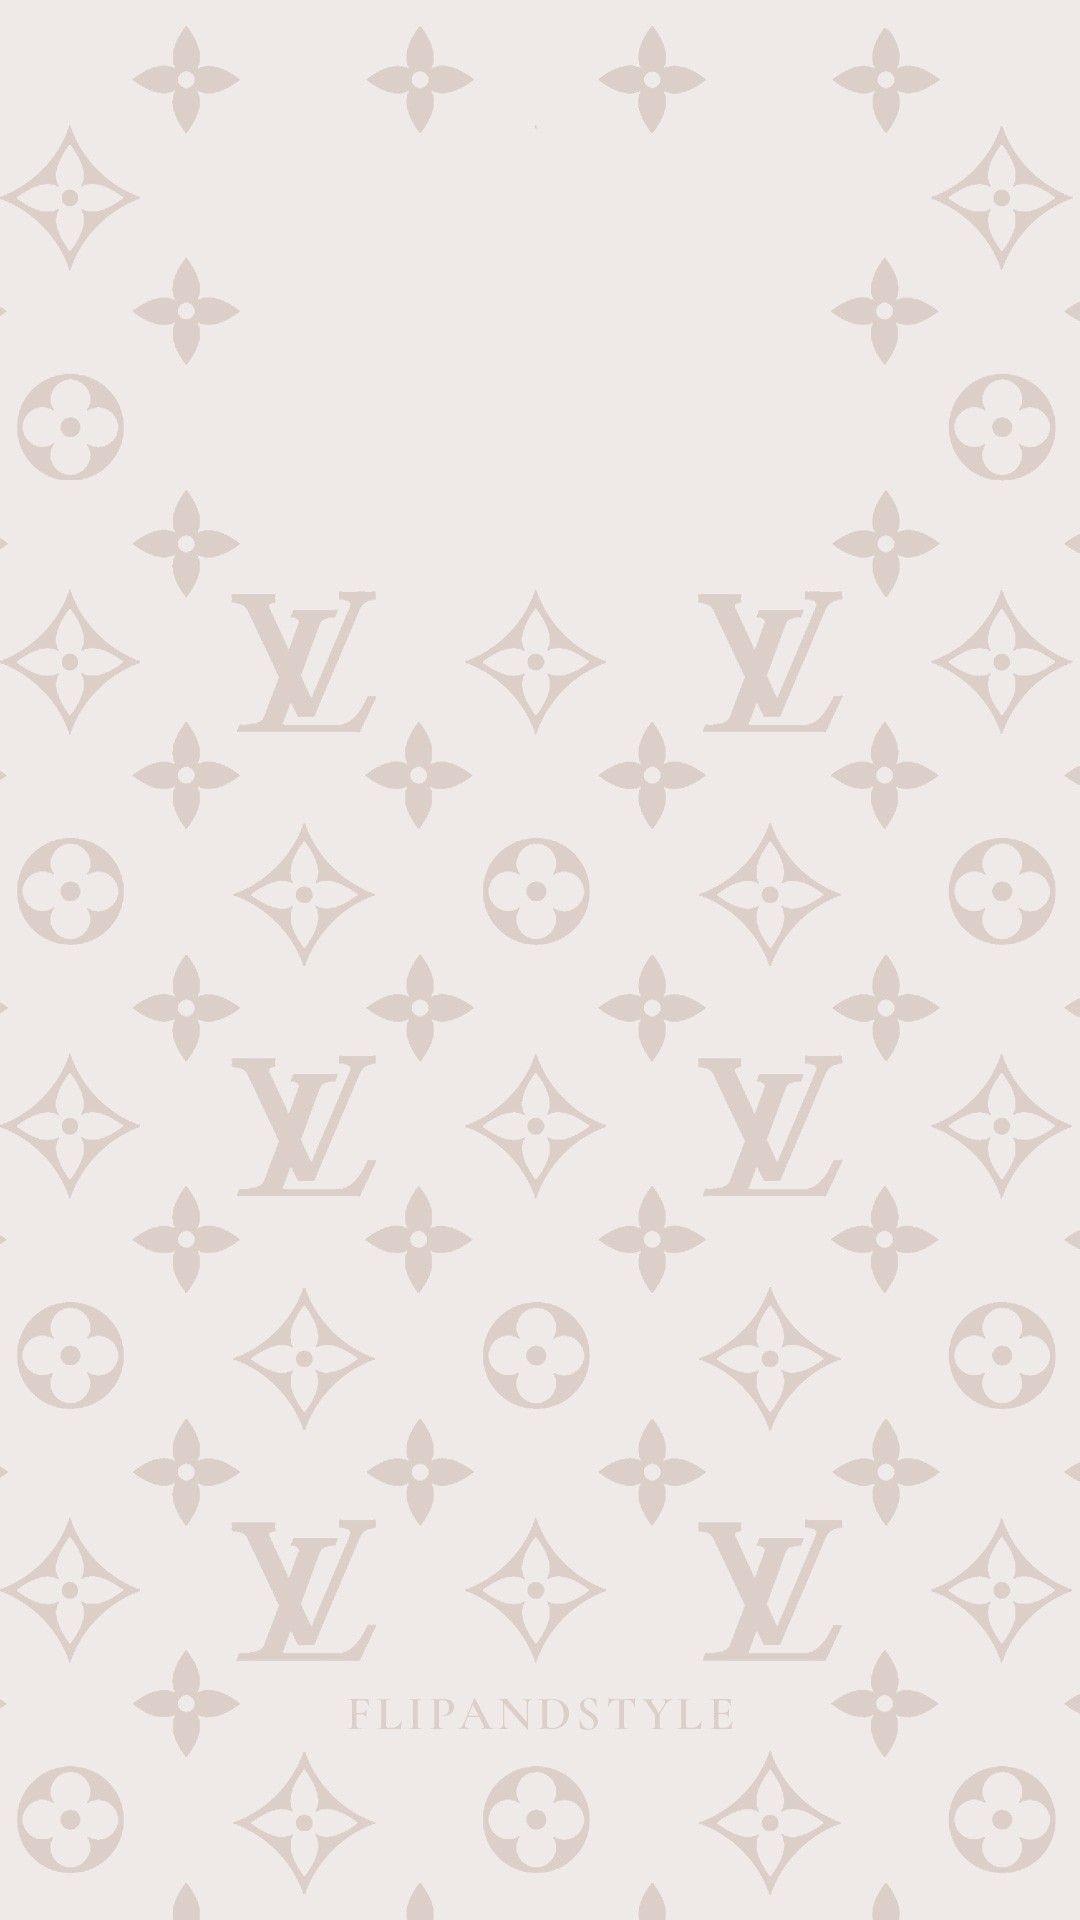 VSCO - fashionwhoree  Louis vuitton iphone wallpaper, Supreme iphone  wallpaper, Apple watch wallpaper